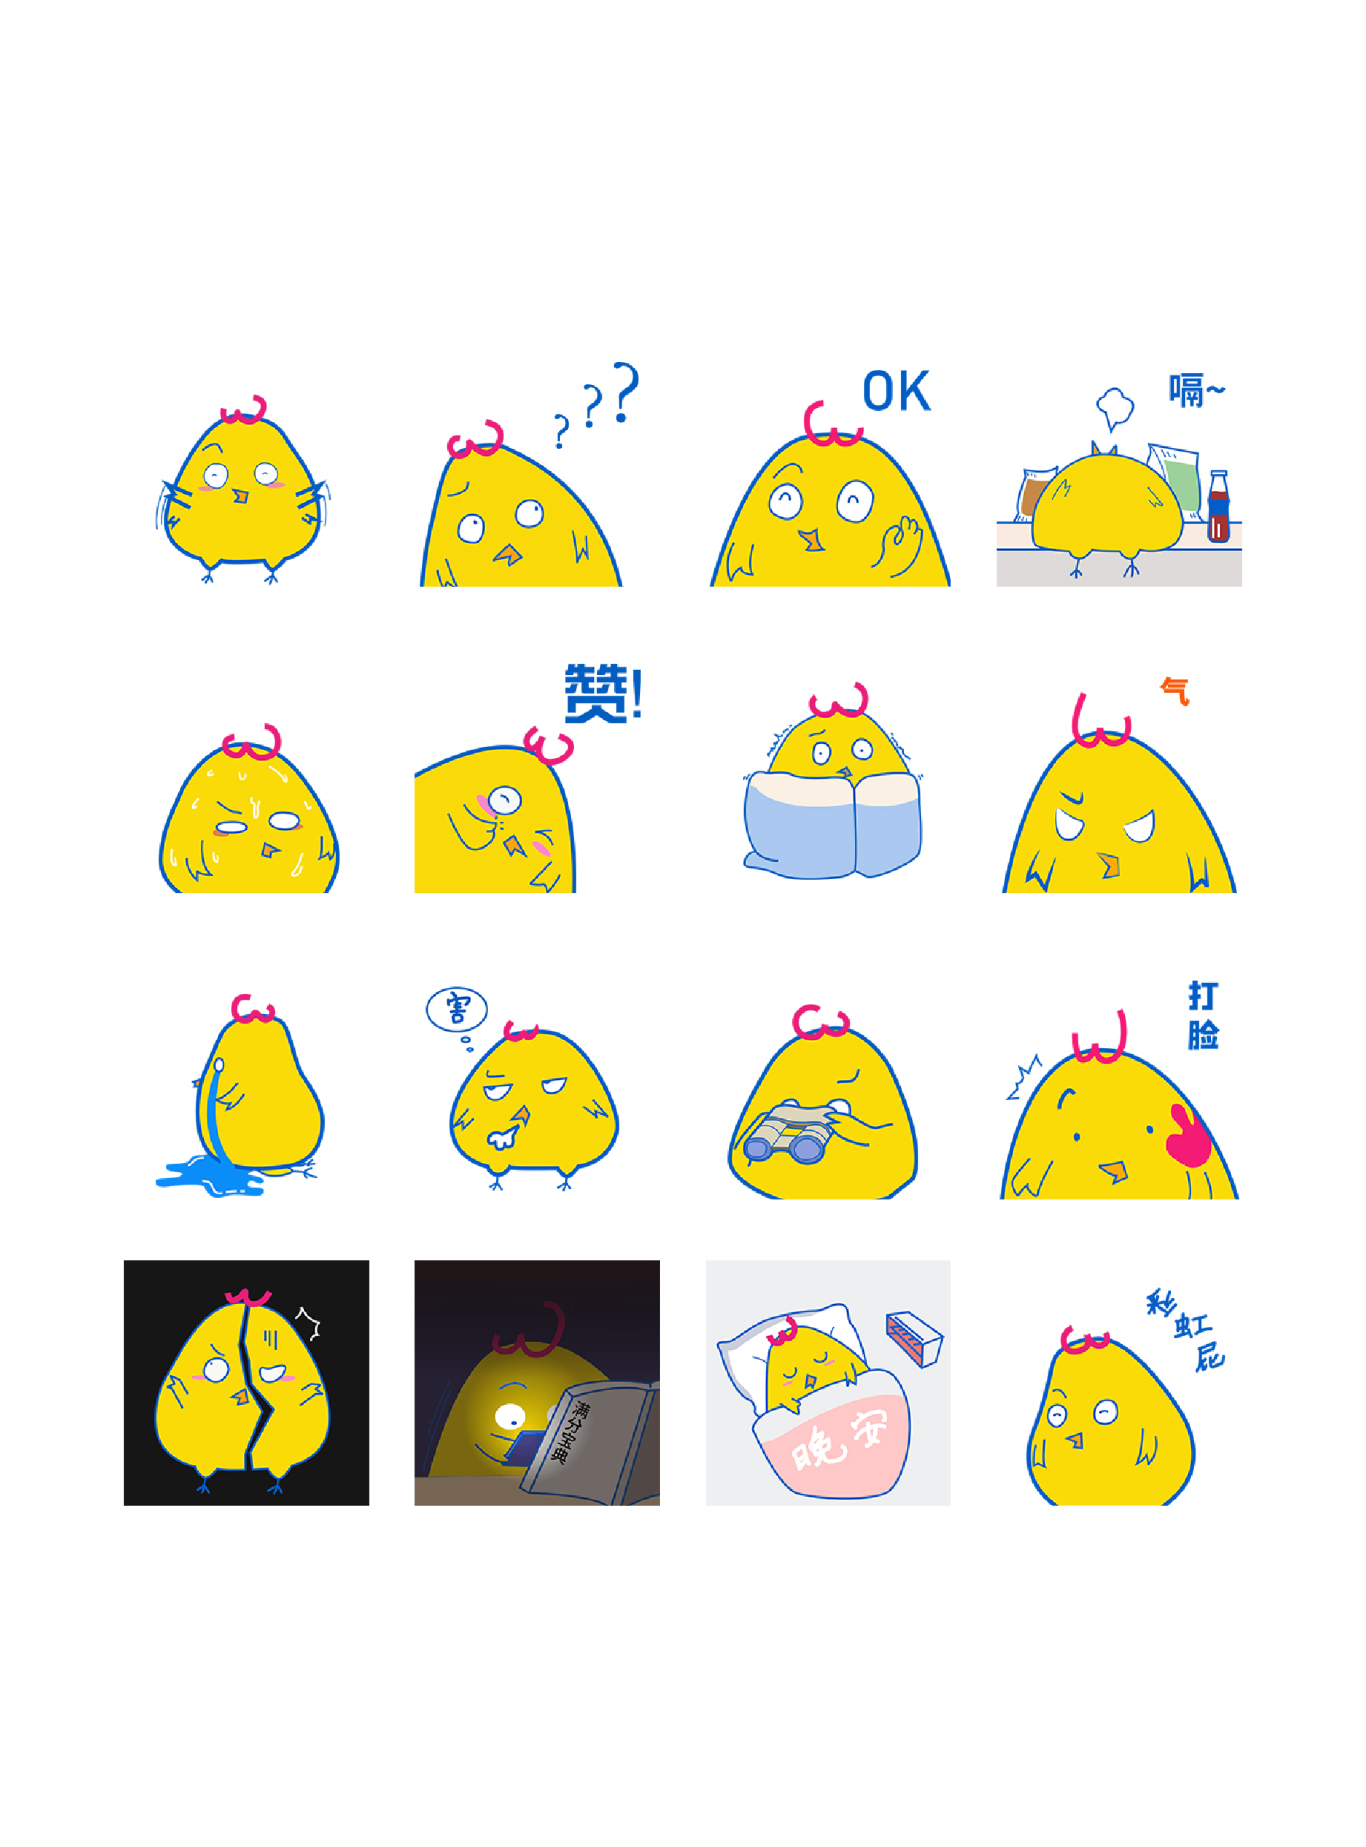 肥肥小黃雞-微信動態表情包圖0